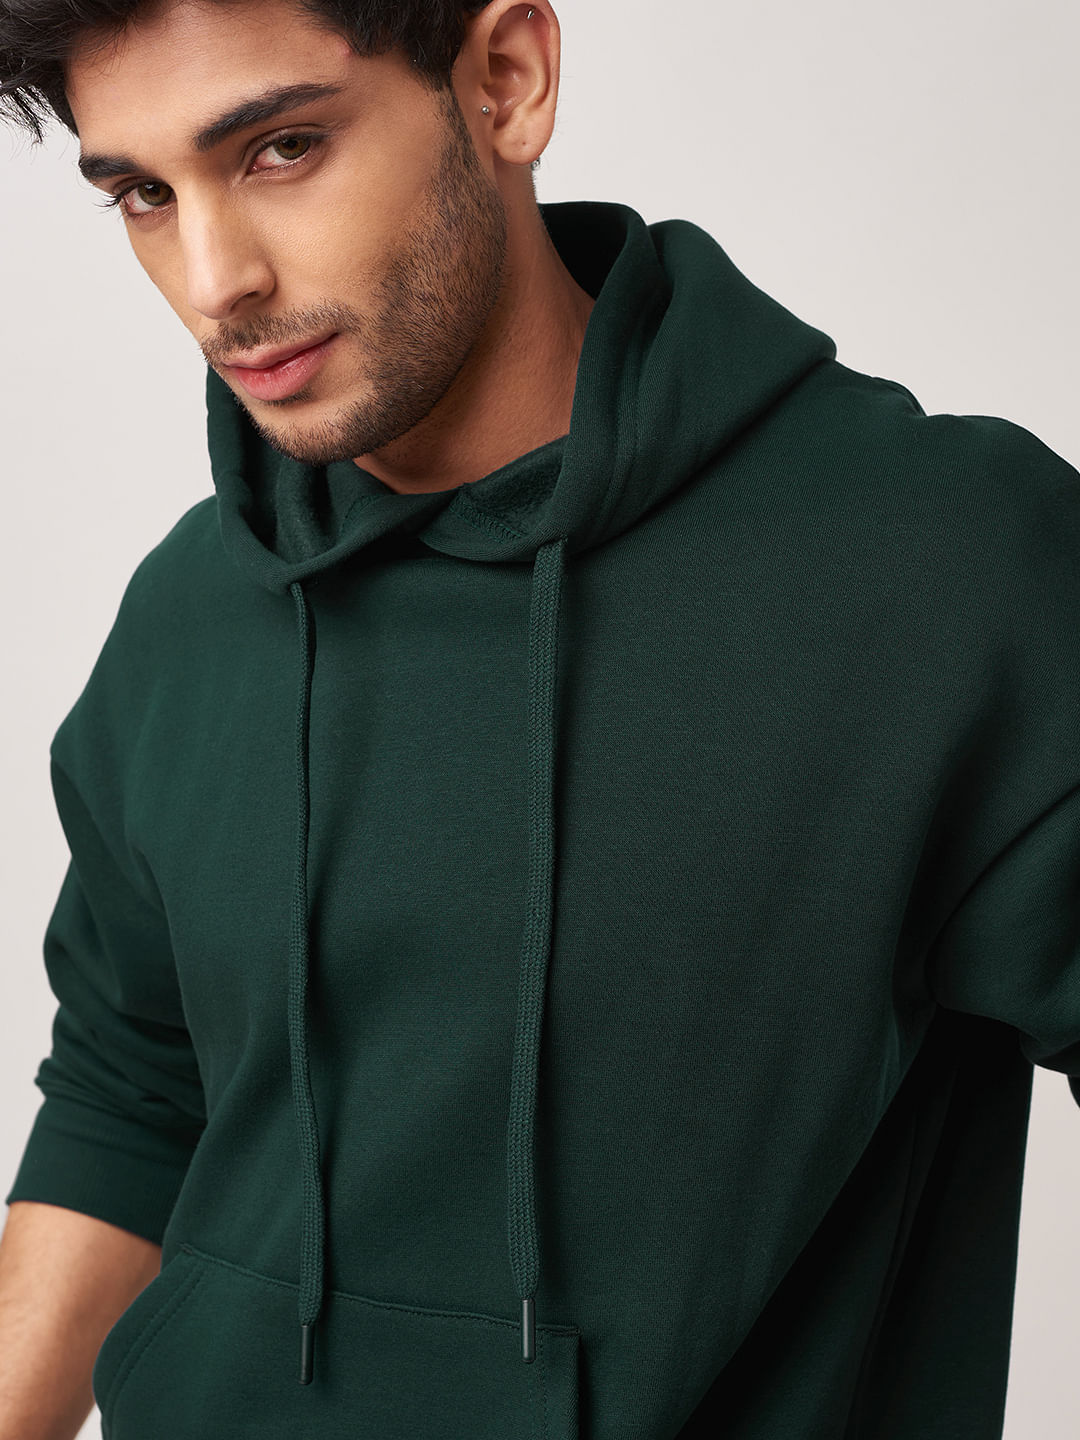 Buy Solids: Emerald Green Men Oversized Hoodies Online